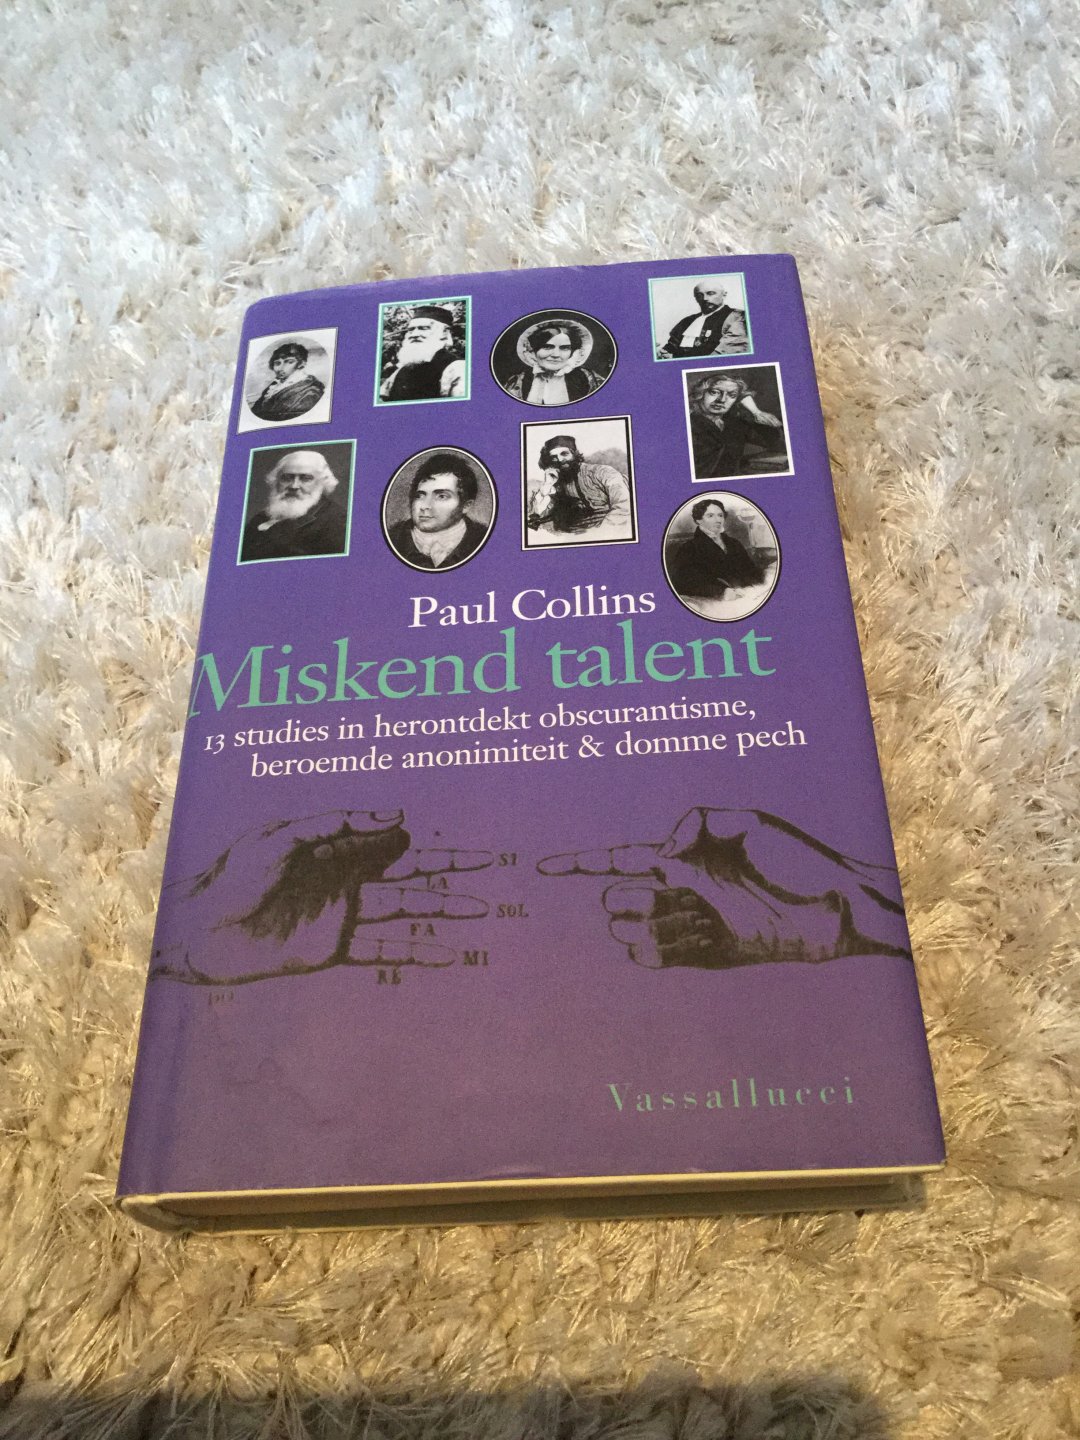 Collins, P. - Miskend talent / dertien studies in herontdekt obscurantisme, beroemde anonimiteit, en domme pech